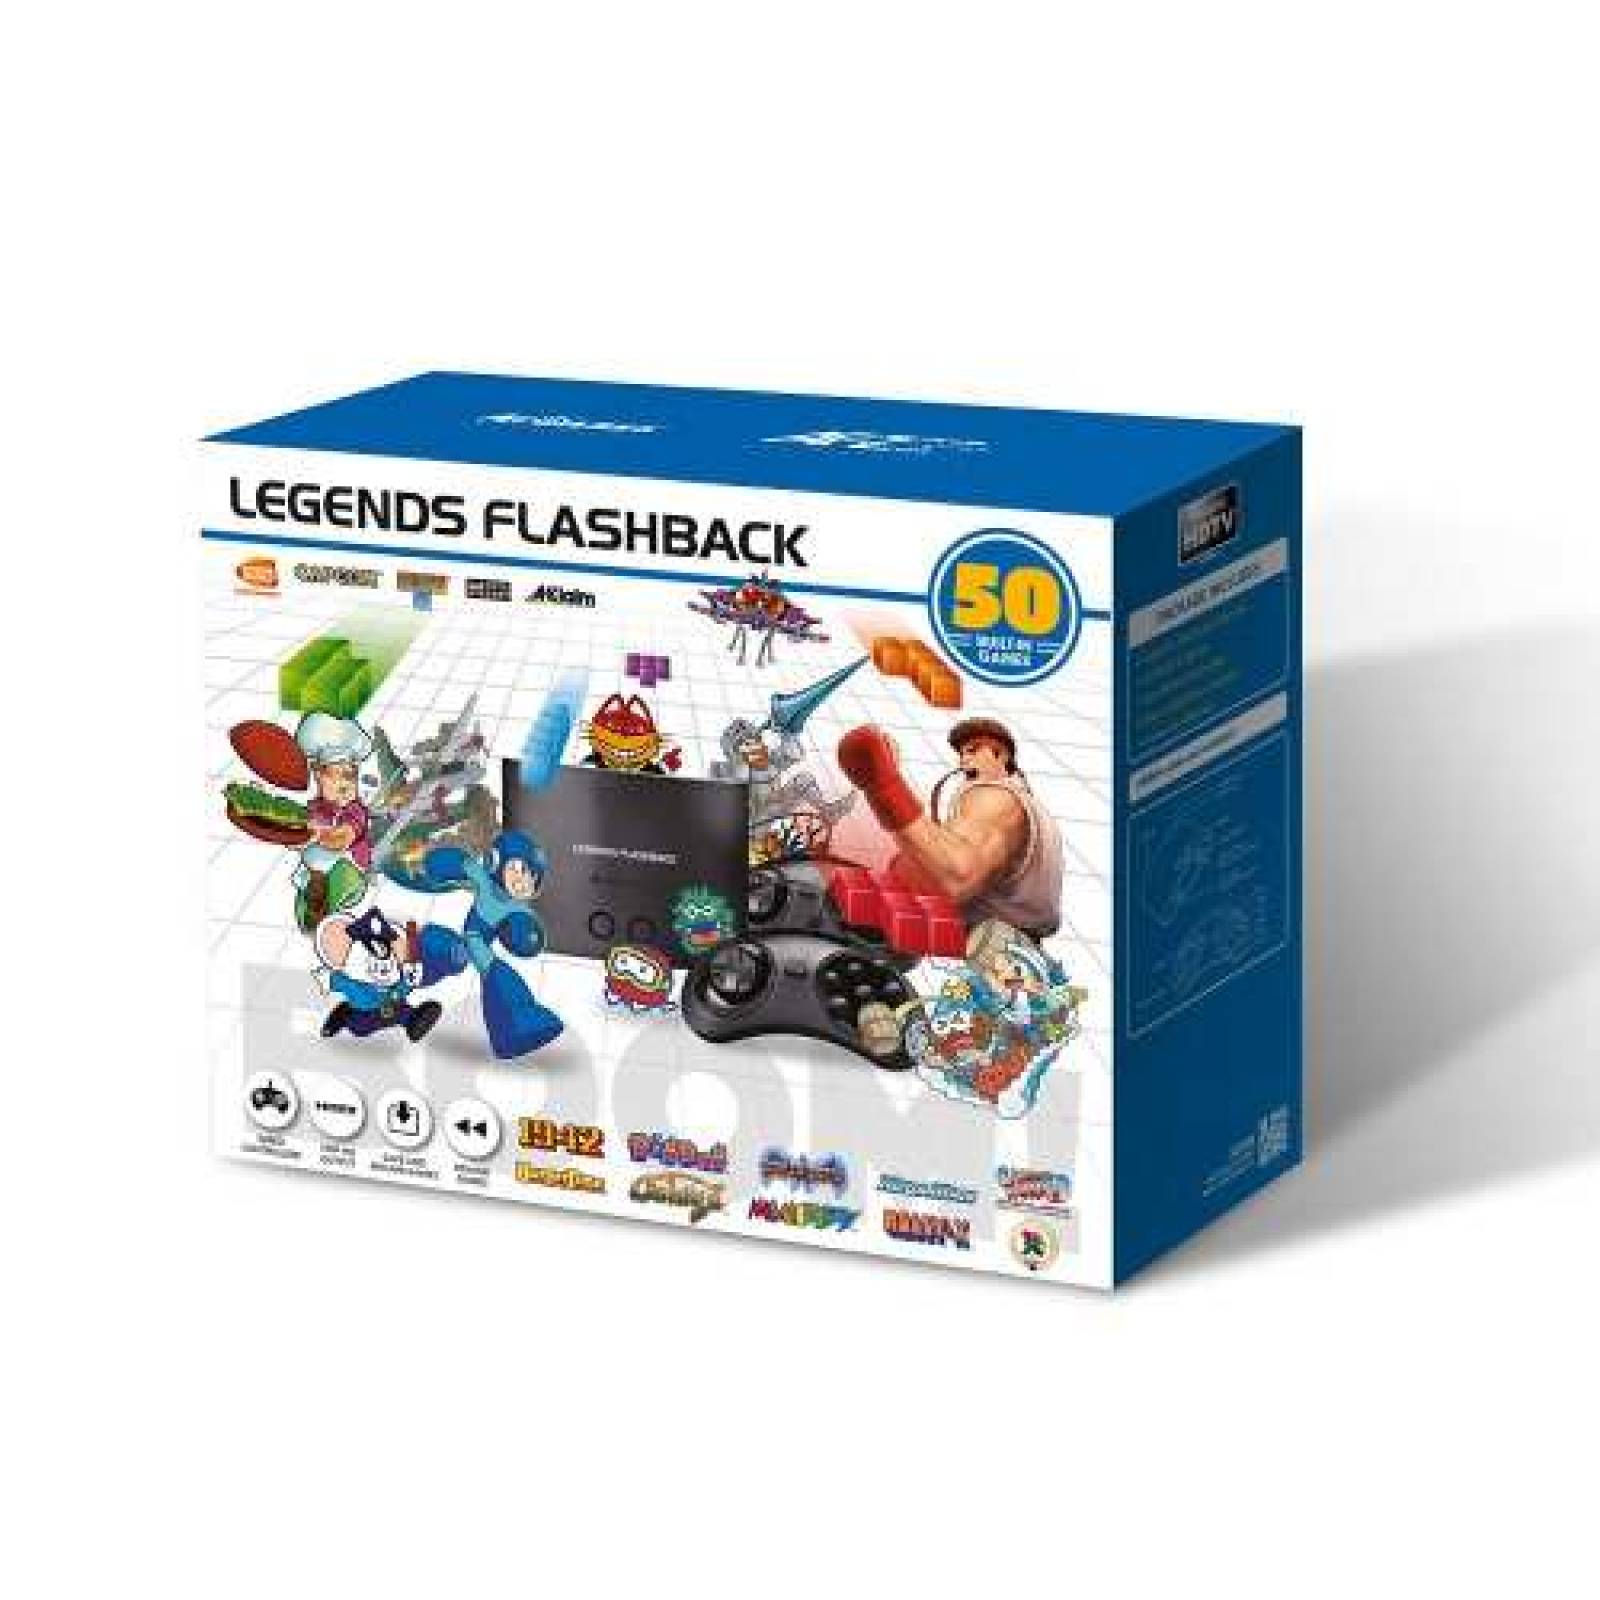 Consola Portable Arcade Legends Flashback Boom 50 Juegos